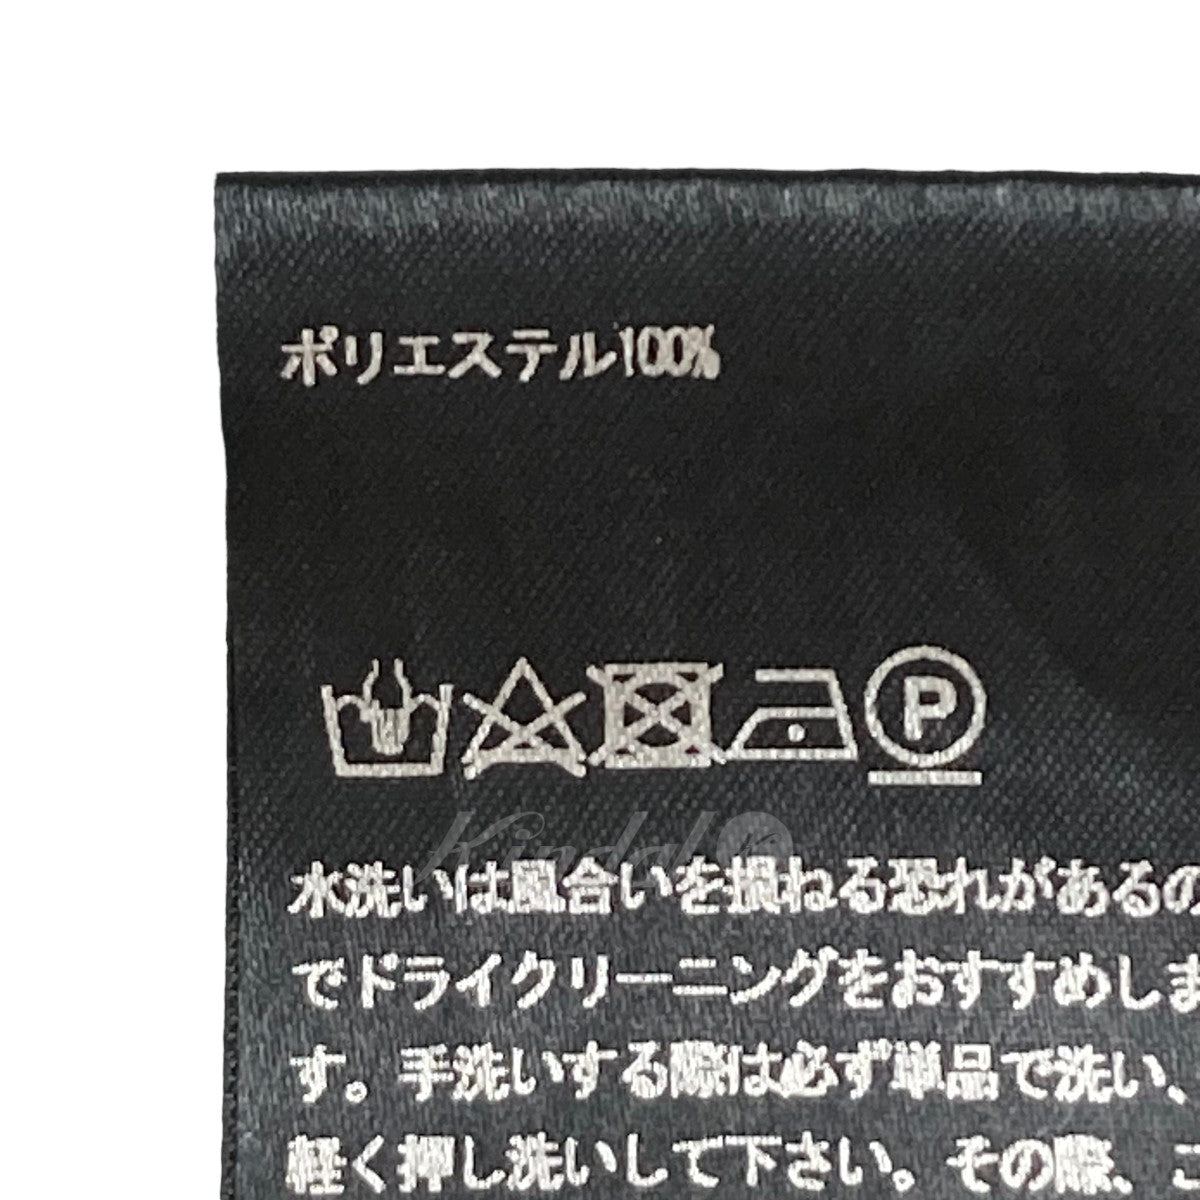 TEATORA(テアトラ) Wallet JKT SM tt-204-SM ブラック サイズ 14 